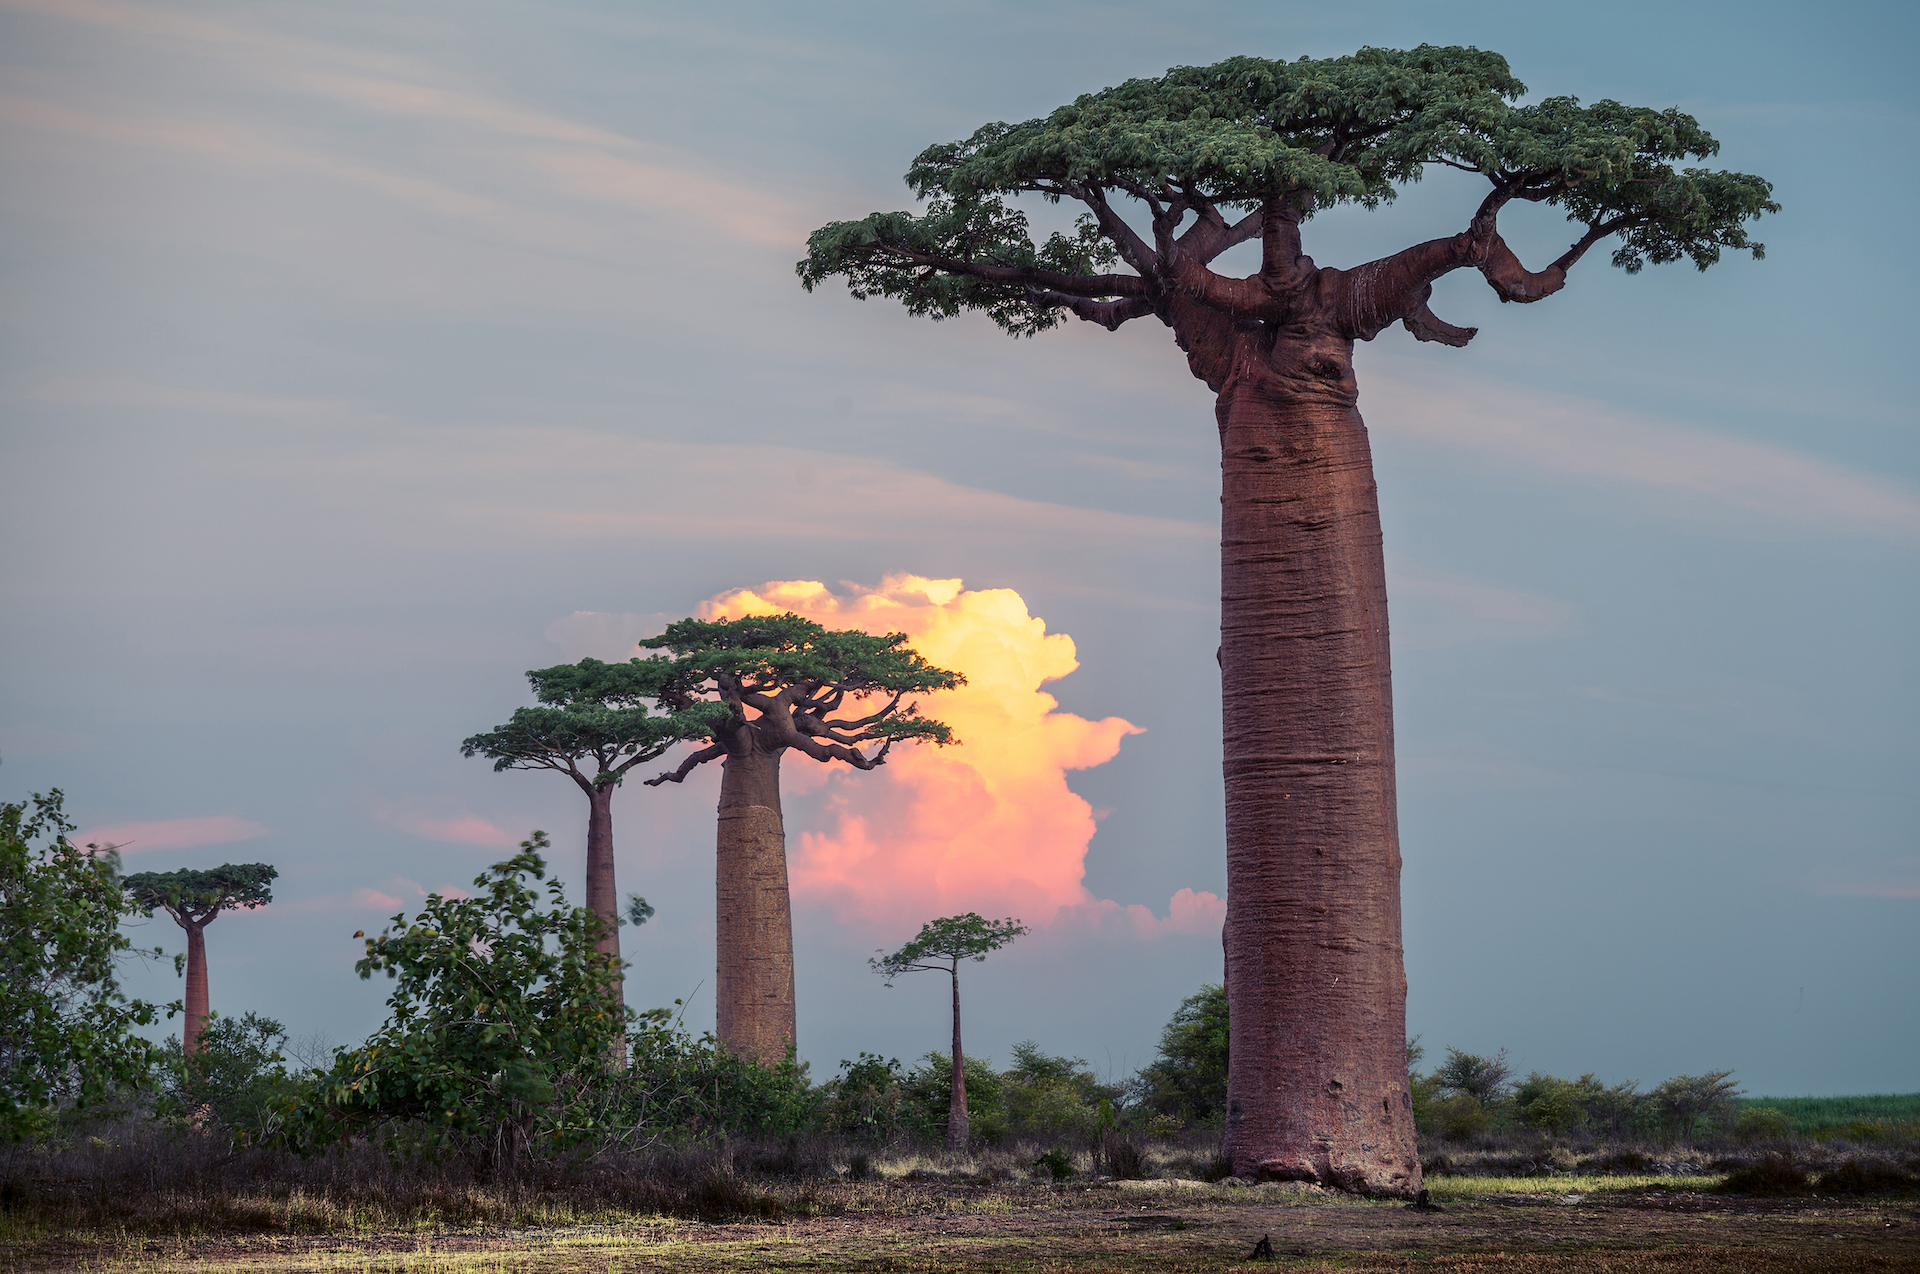 A photo of leafy baobab trees in Madagascar